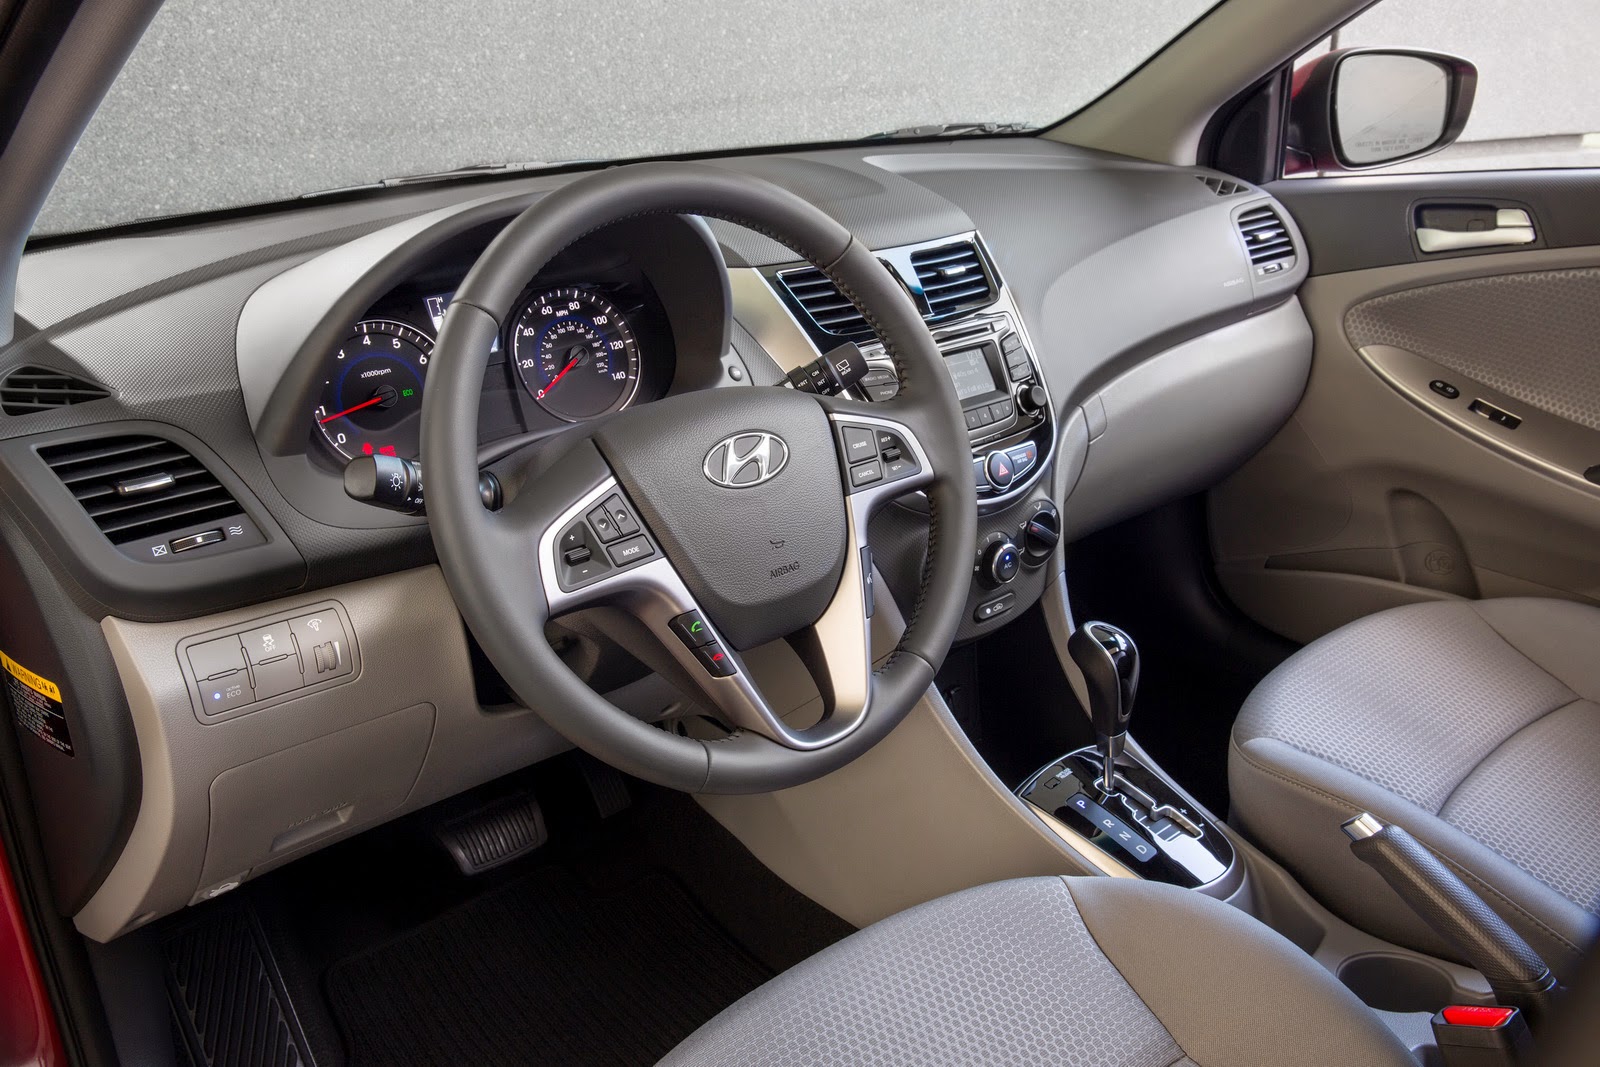 Hyundai Accent 2015 nhập khẩu giá ngang i10 có nên mua